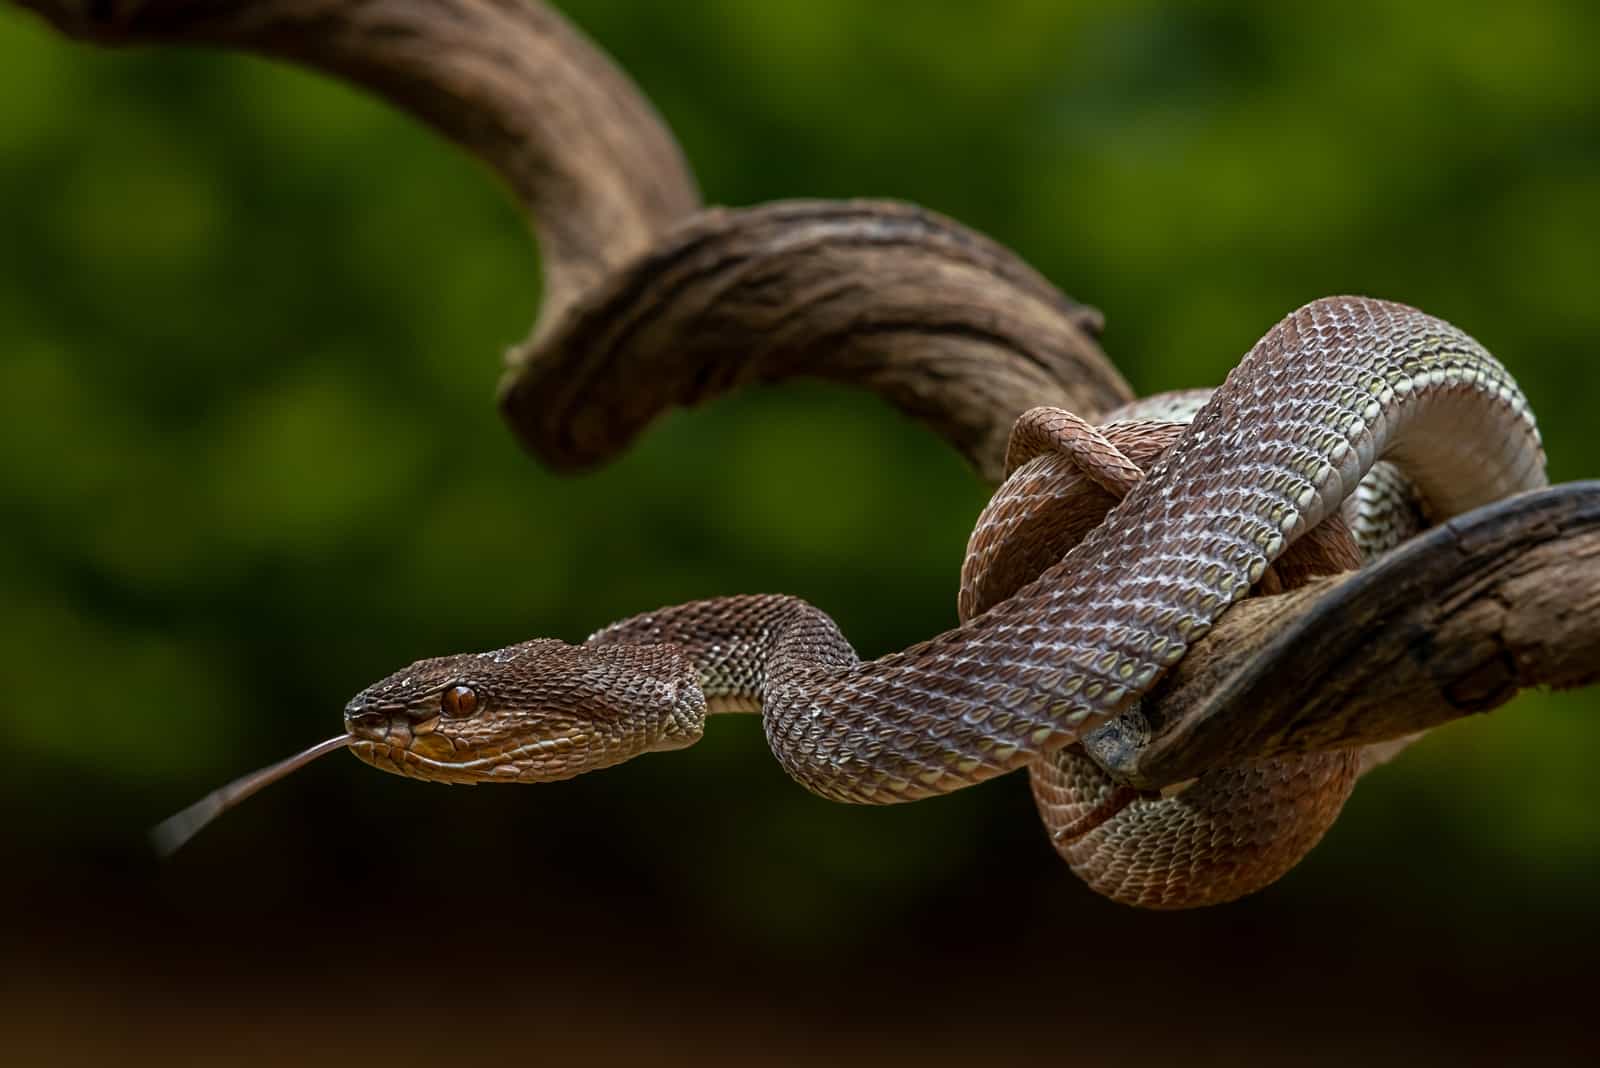 A venomous snake as a natural predator ready to strike